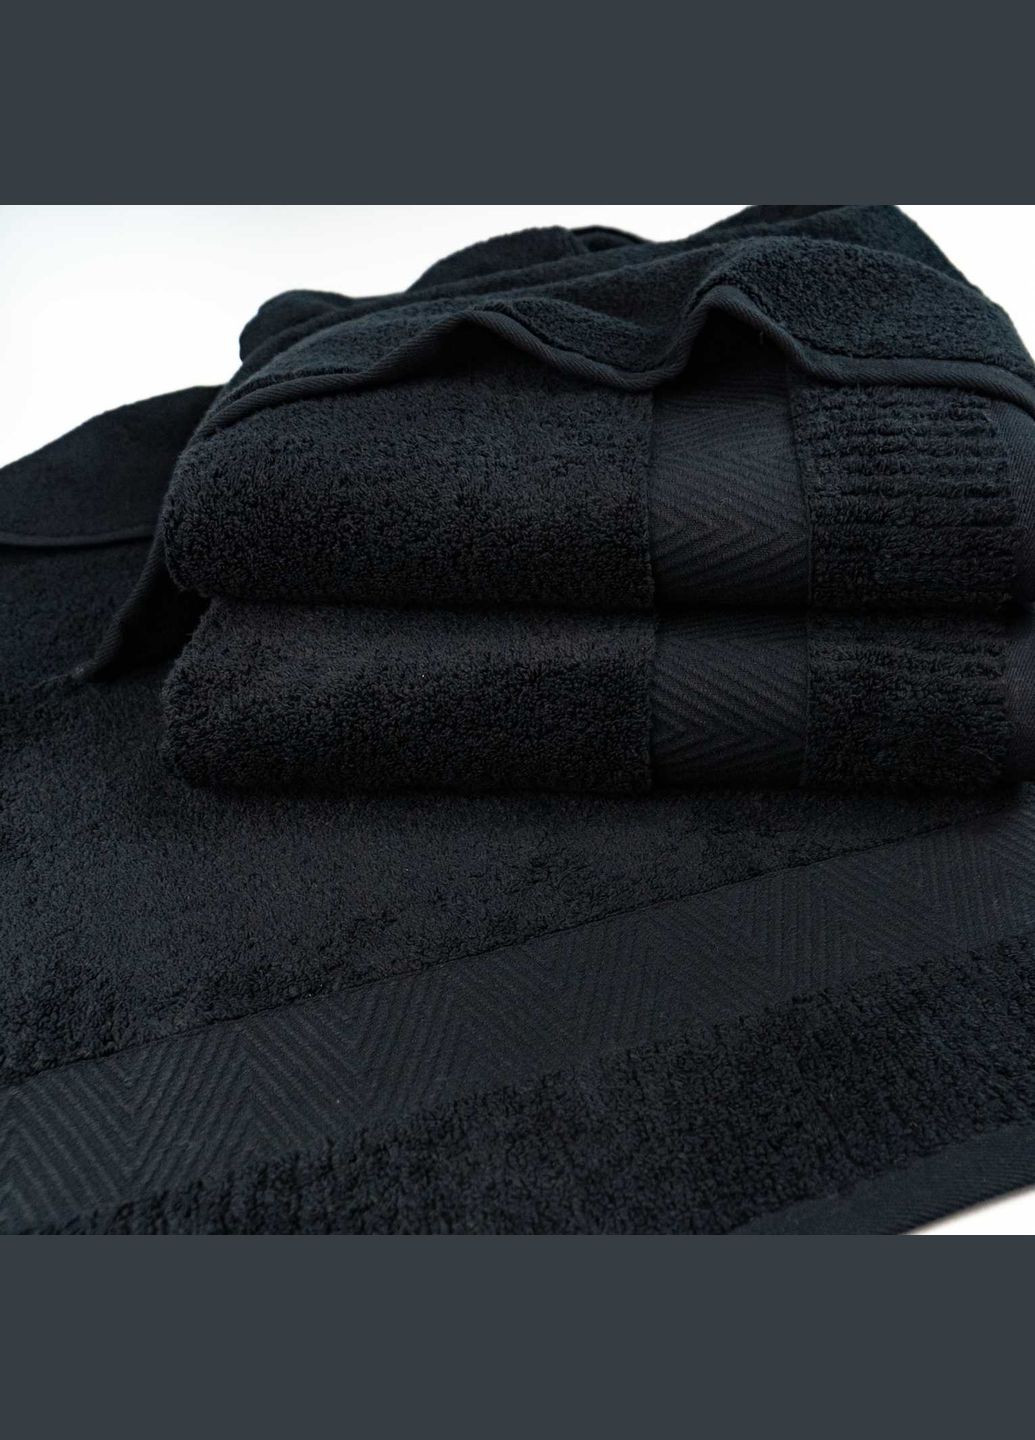 GM Textile полотенце махровое для лица и рук 40x70см премиум качества зеро твист бордюр 550г/м2 () черный производство -